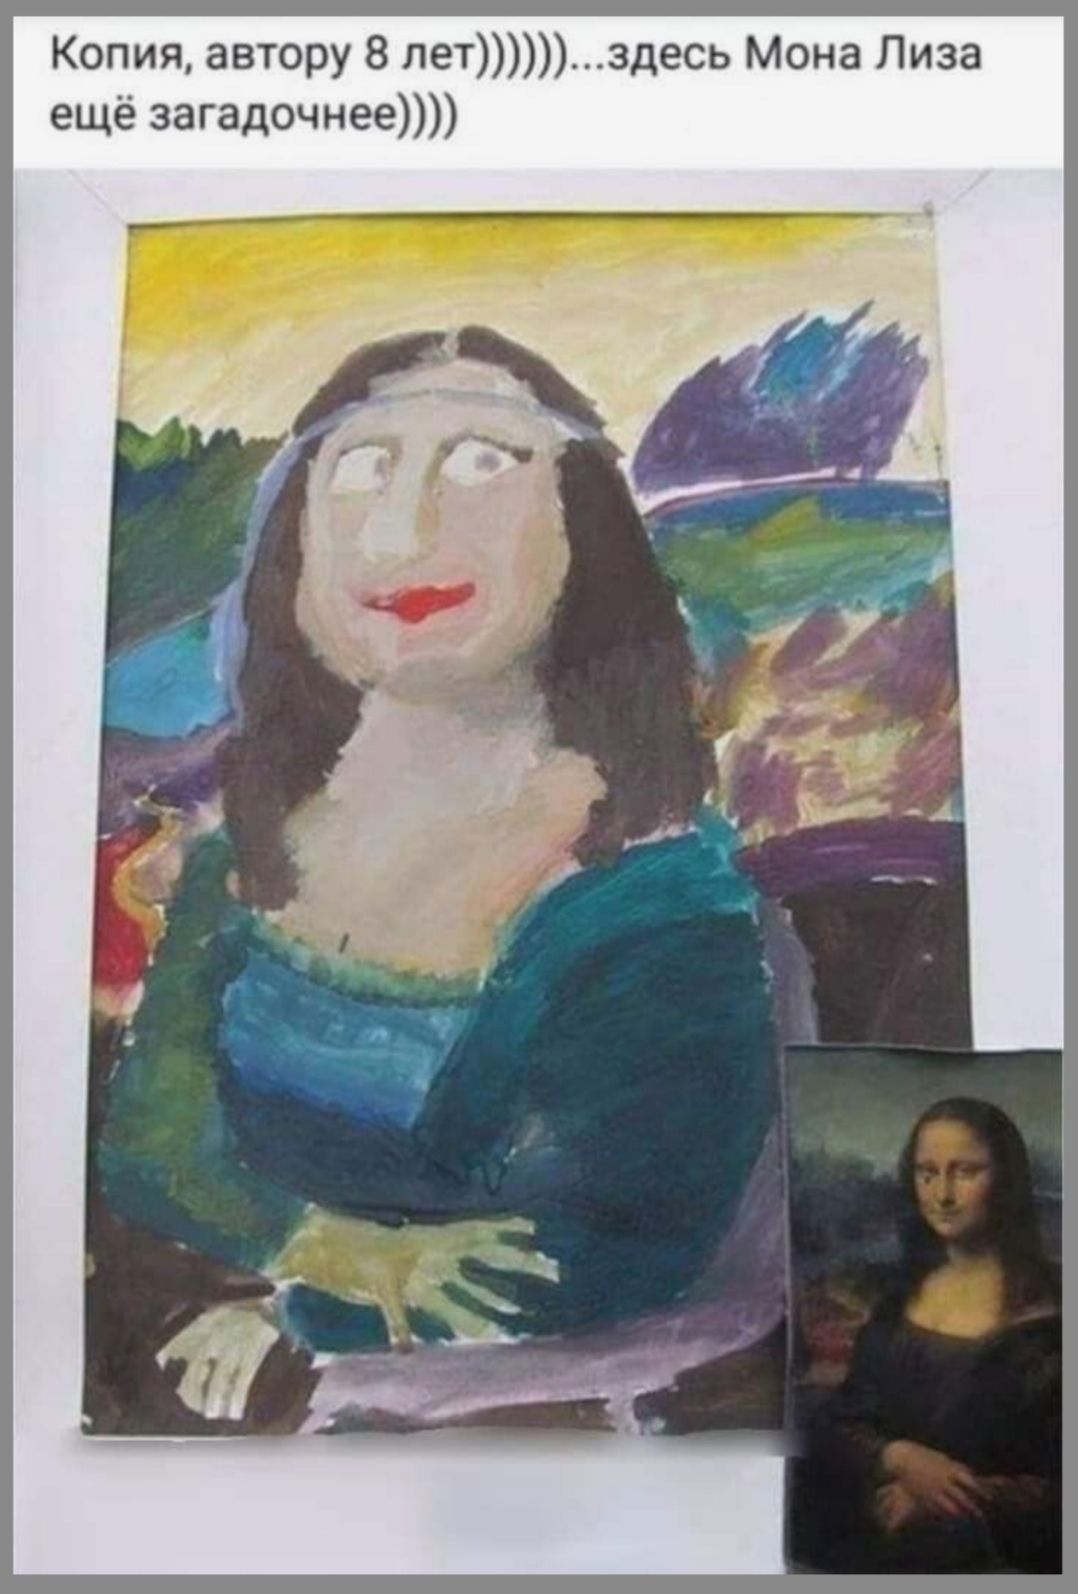 Копия авгору 8 лет здесь Мона Лиза еще загадочнее